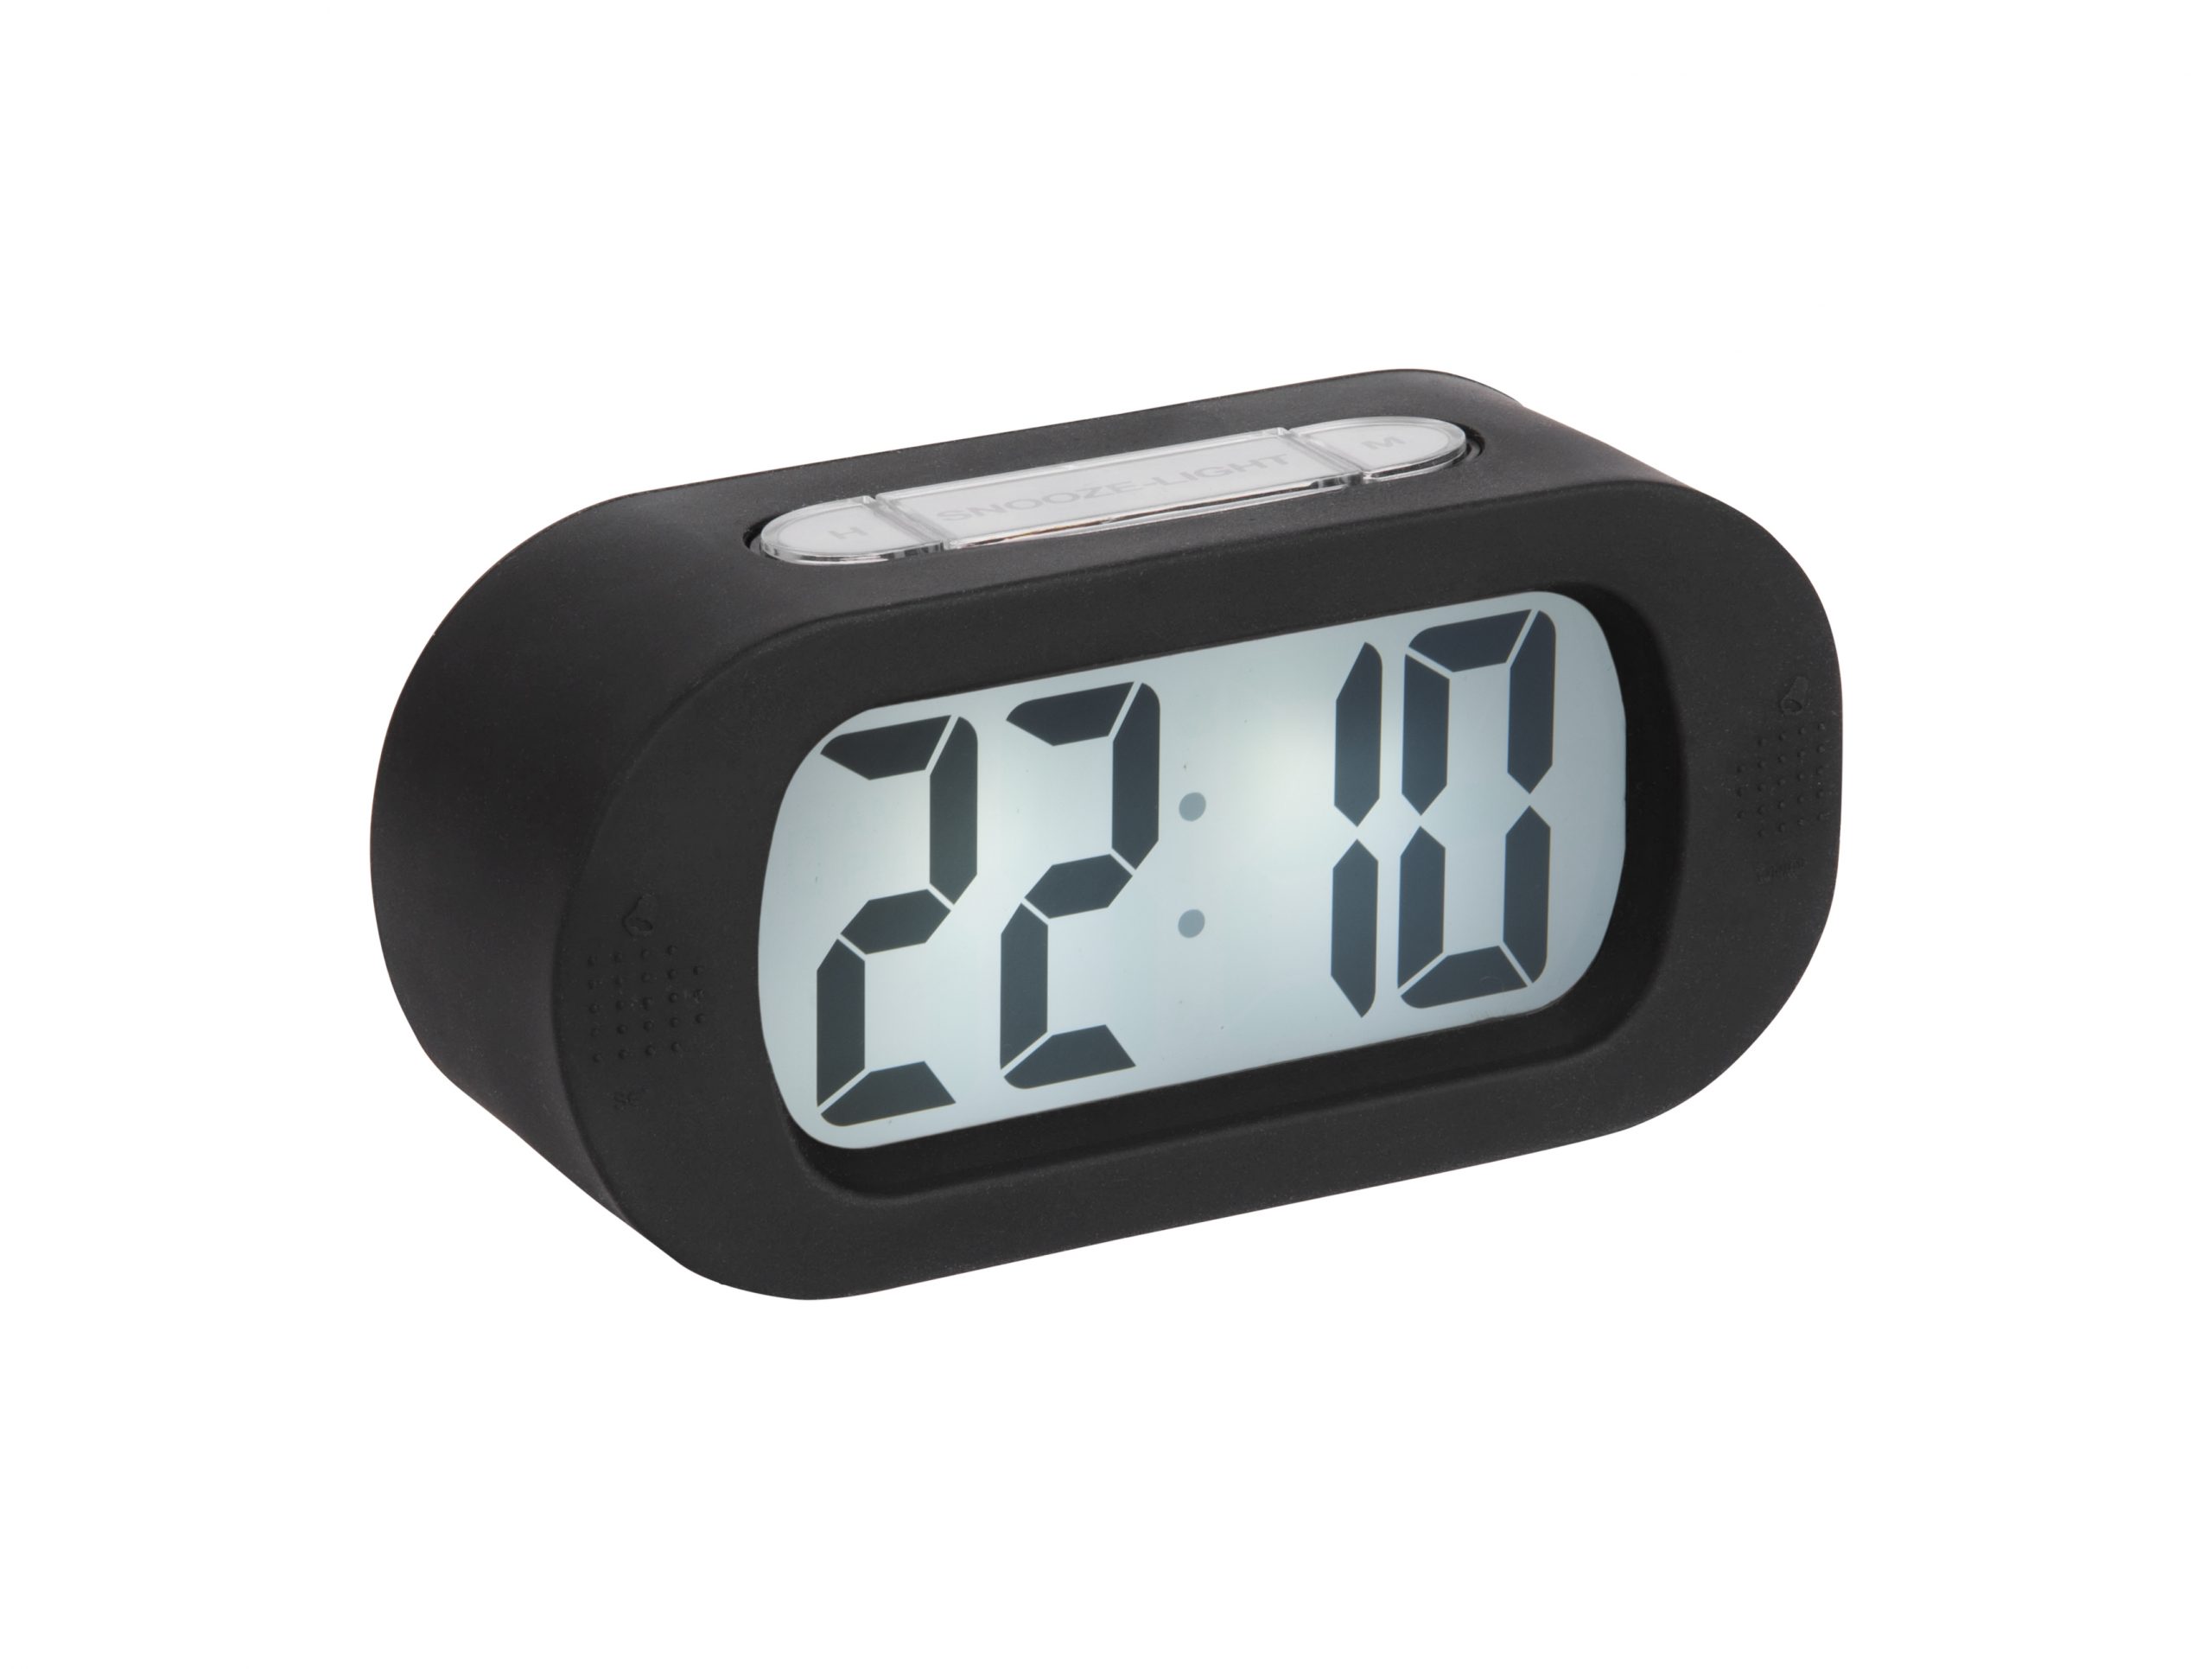 Verhogen De controle krijgen patrouille Karlsson - Alarm Clock Gummy Black - Digitale wekker zwart - BijCees